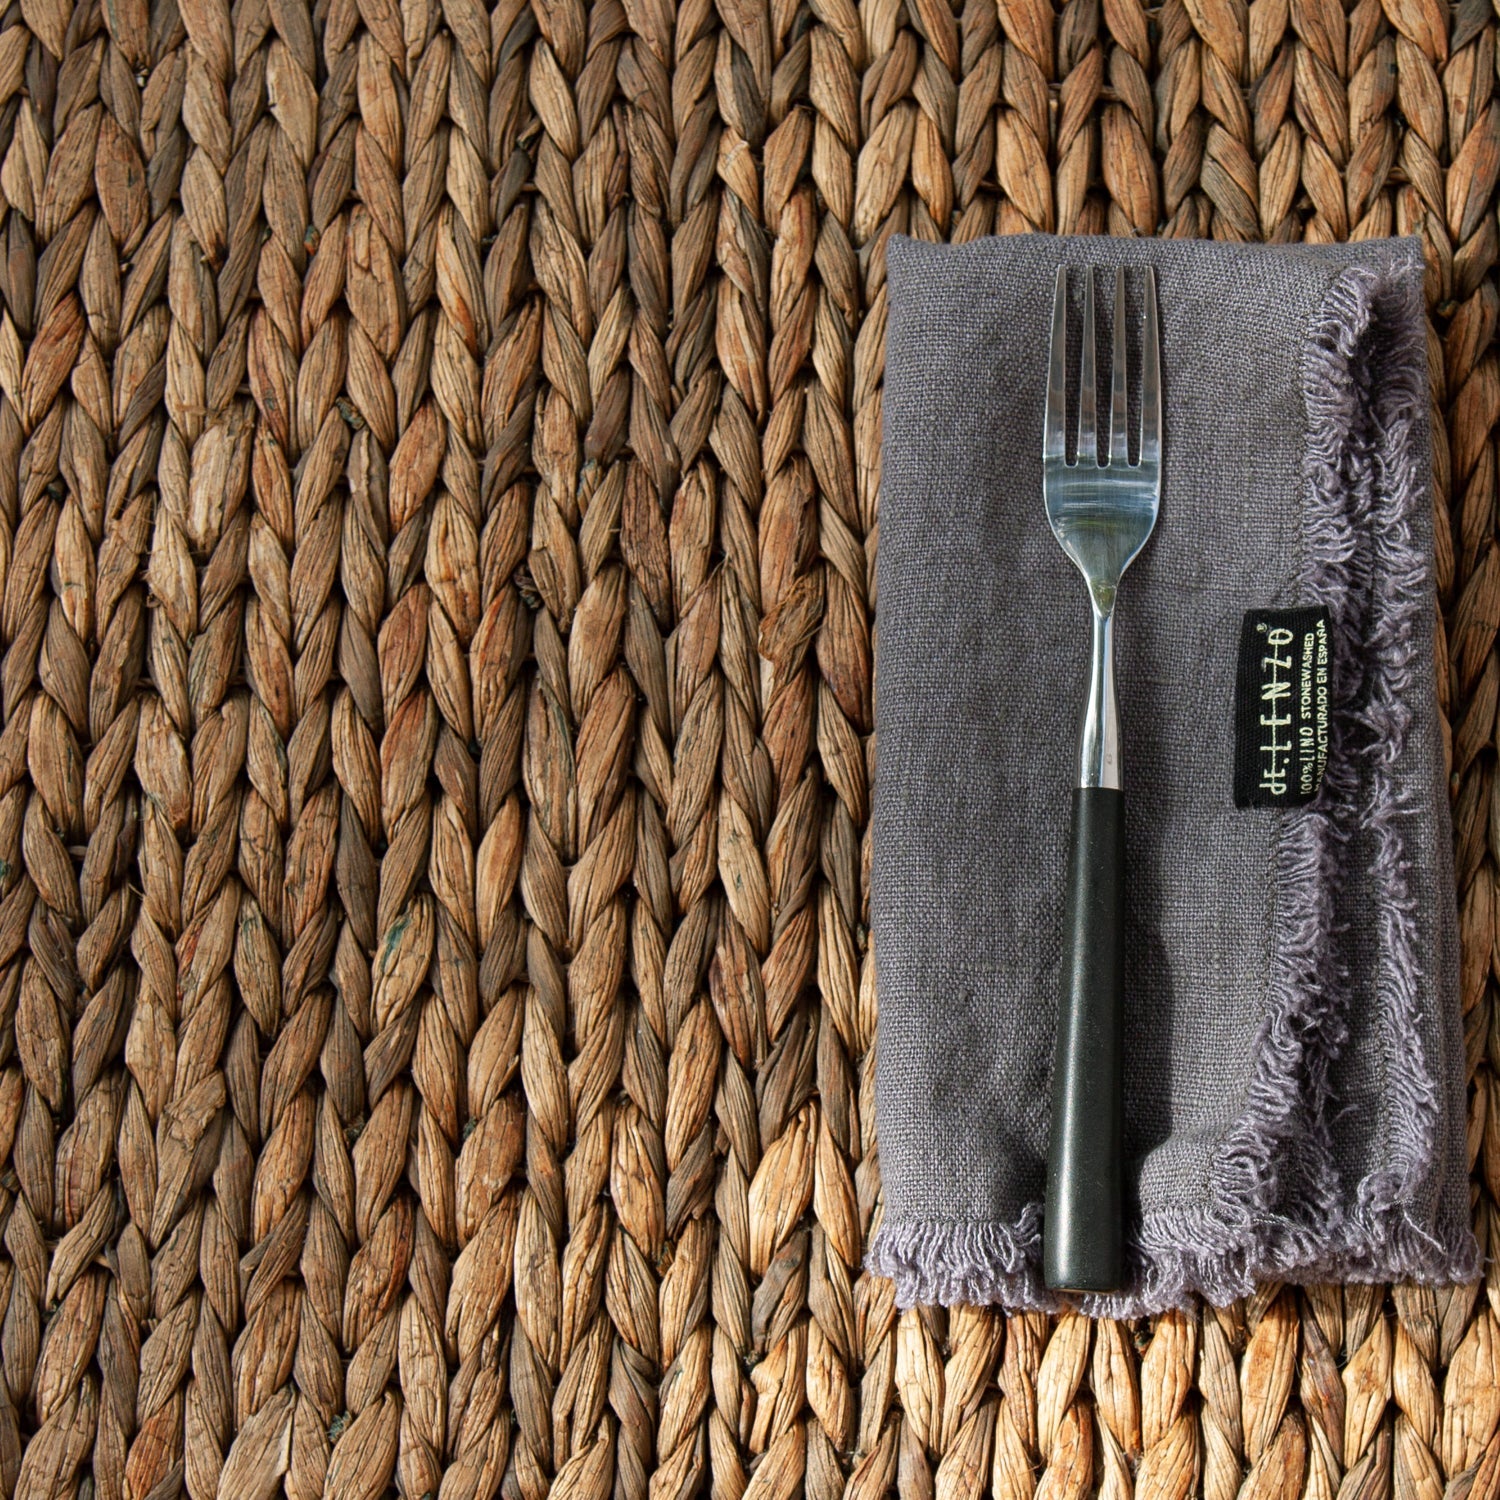 Servilleta gris de lino con tenedor.